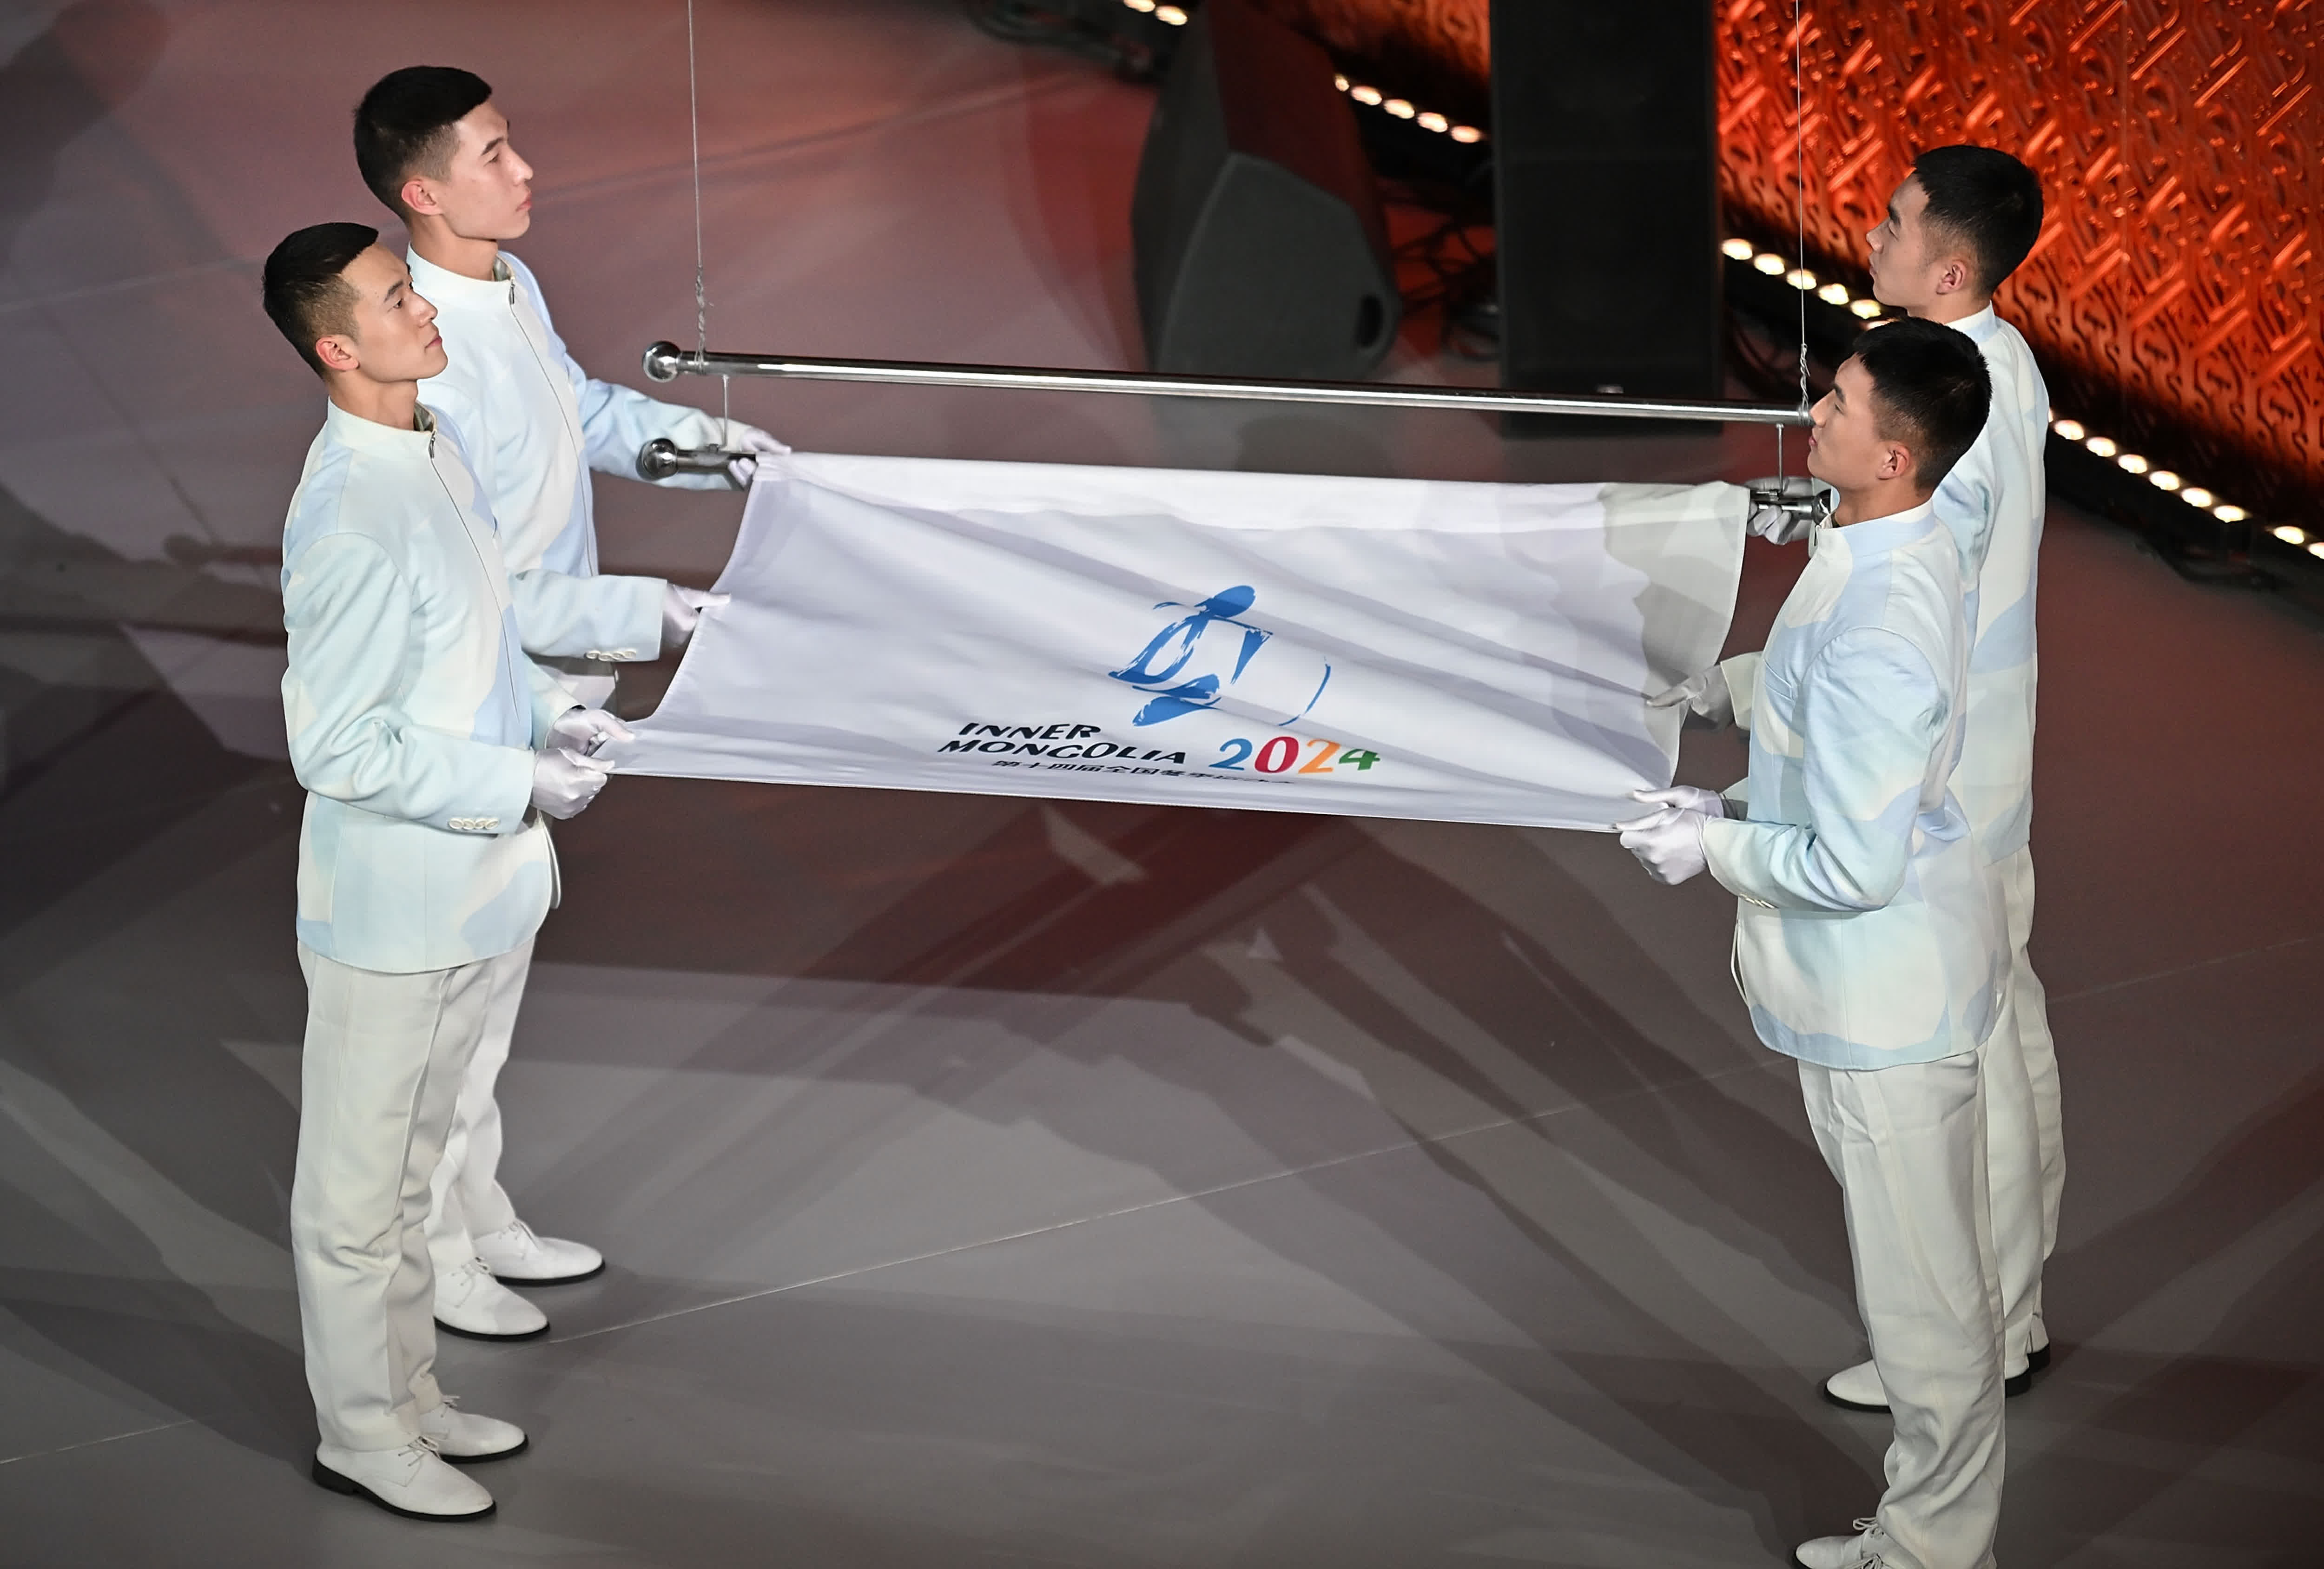 這是2月27日在閉幕式上拍攝的中華人民共和國第十四屆冬季運動會會旗。